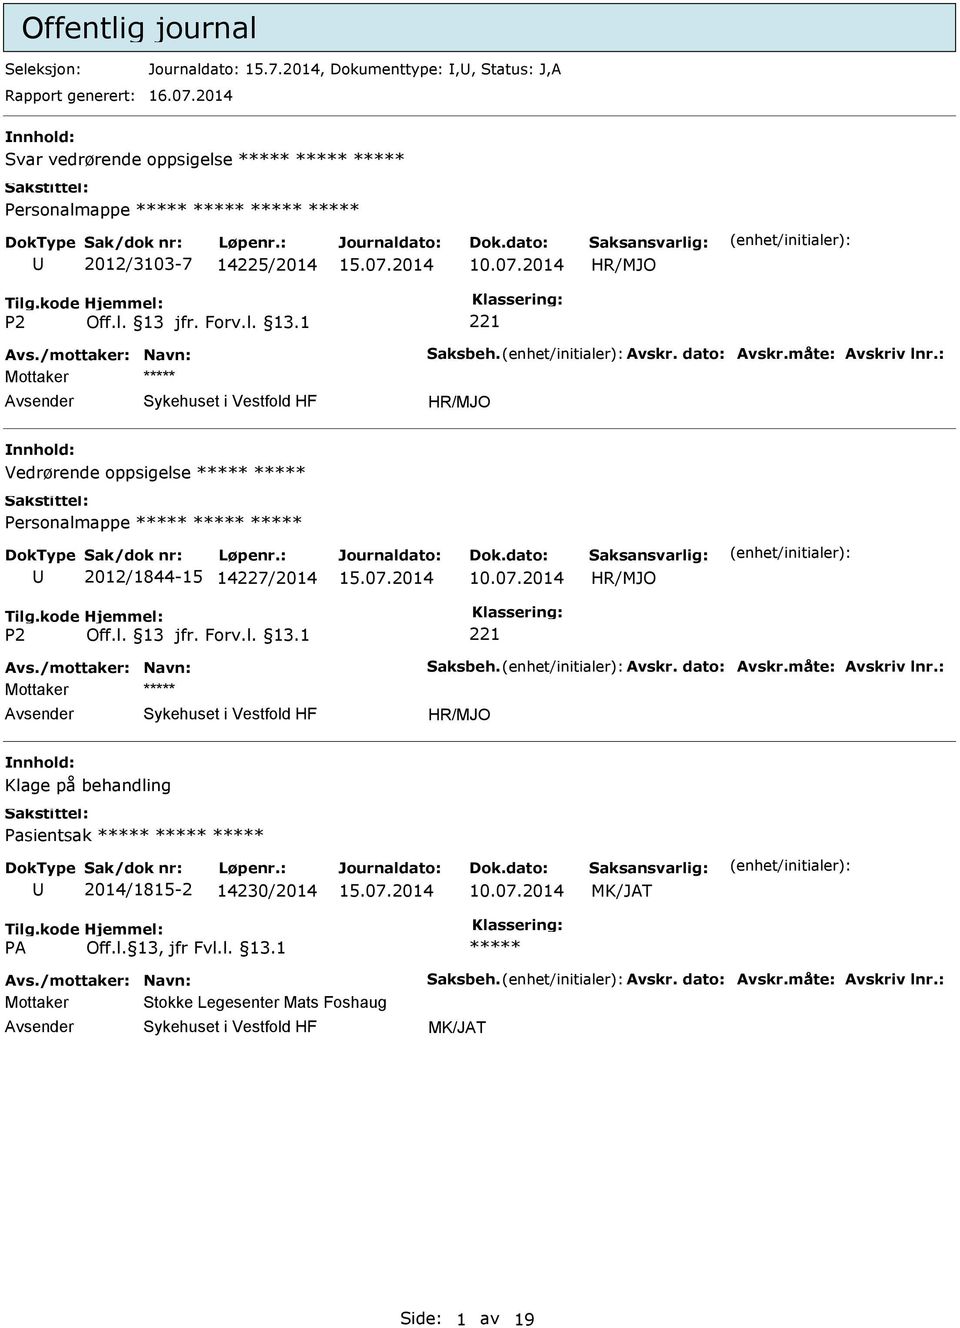 nnhold: Vedrørende oppsigelse Personalmappe 2012/1844-15 14227/2014 Mottaker Avsender Sykehuset i Vestfold HF nnhold: